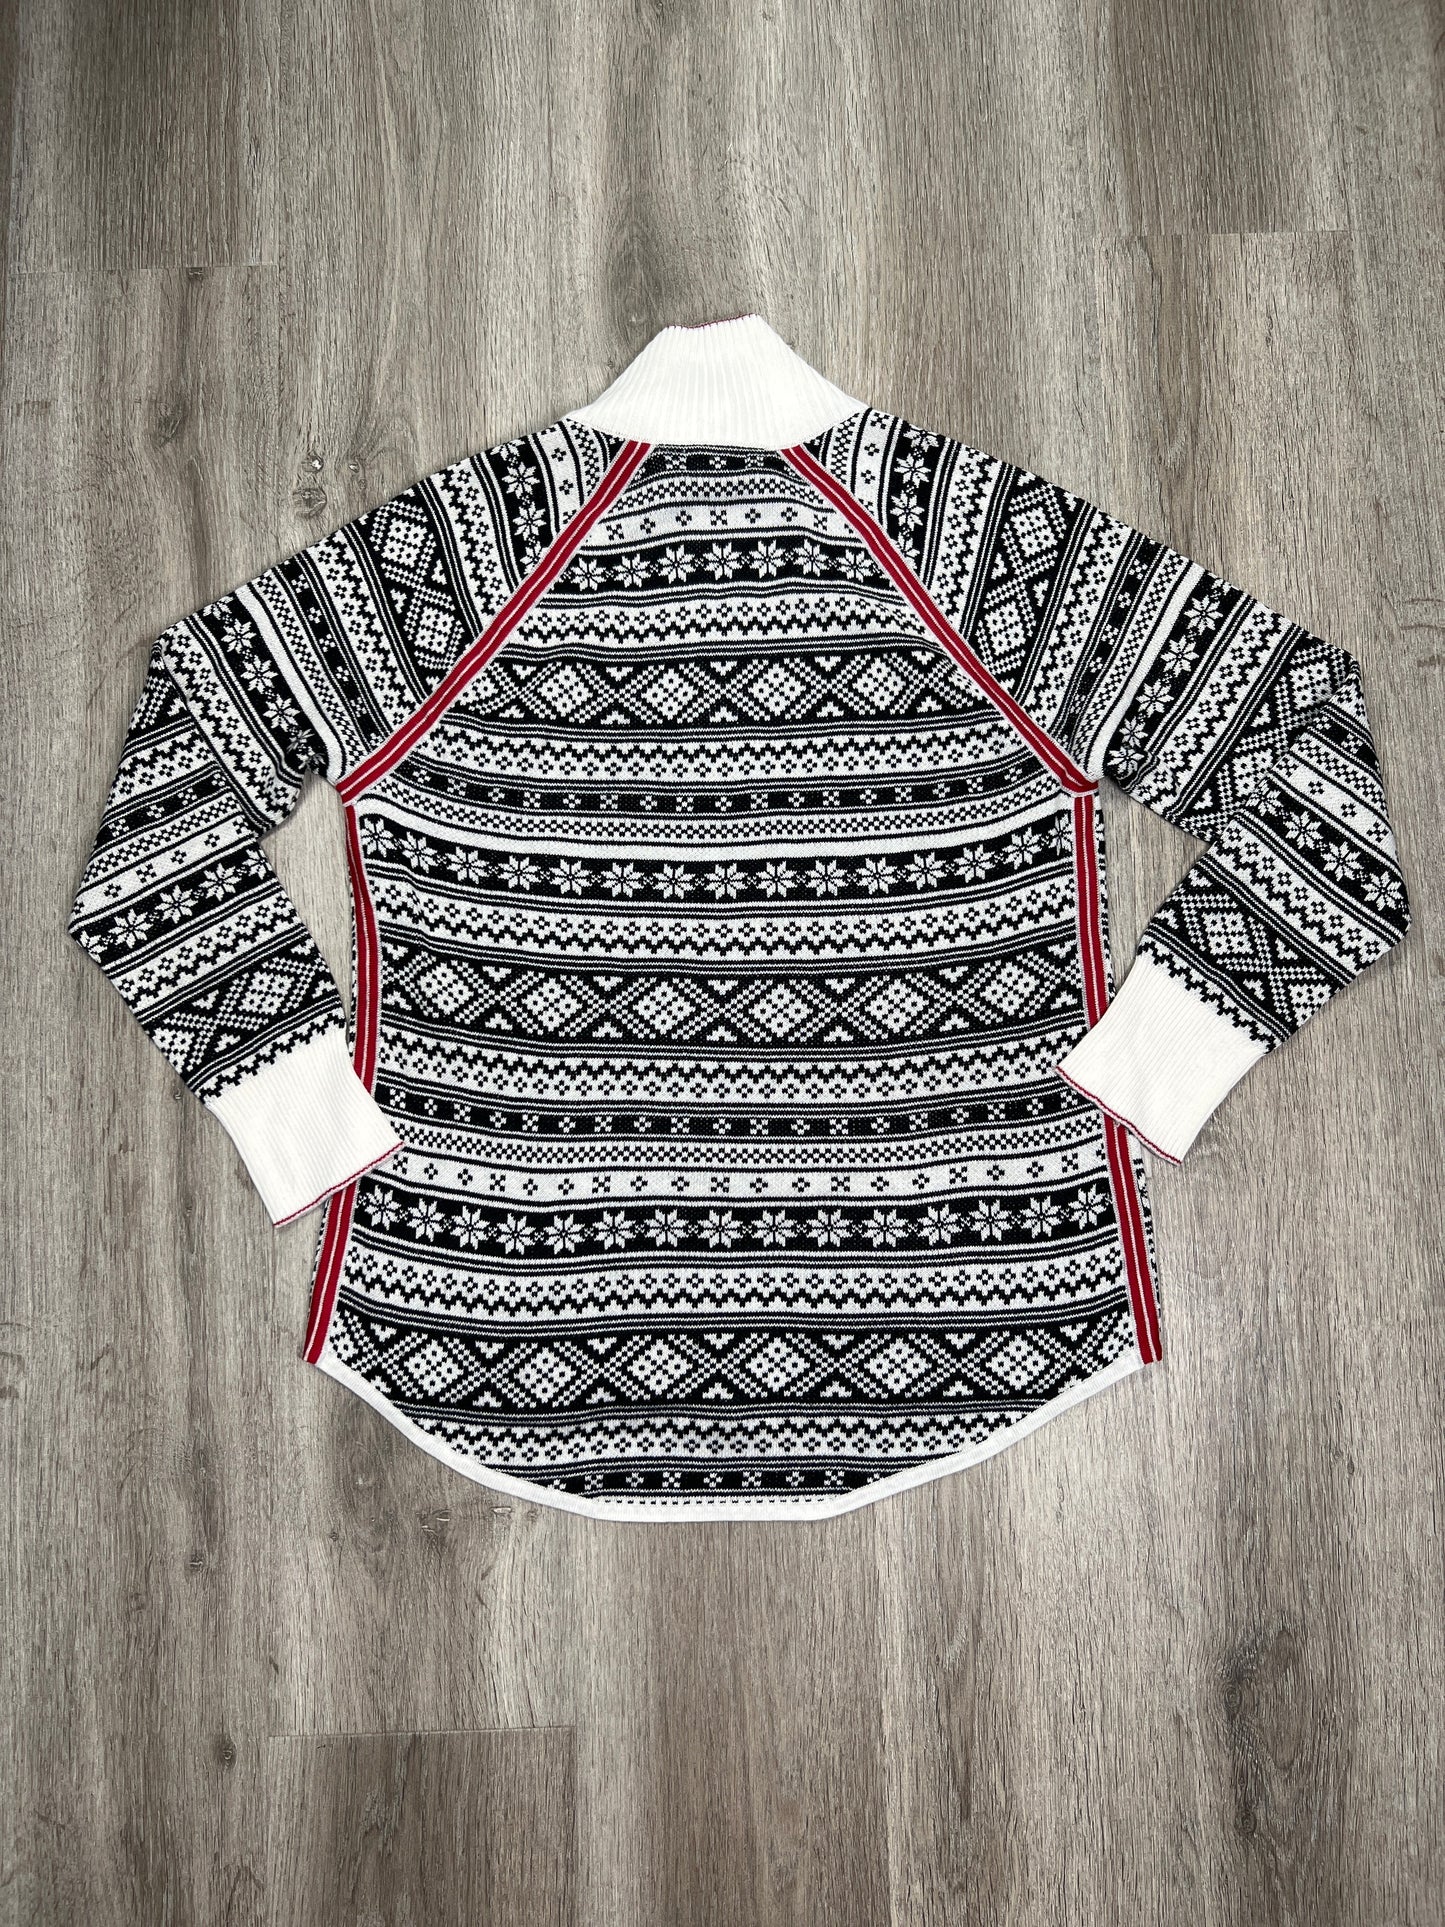 Black & White Sweater Eddie Bauer, Size M